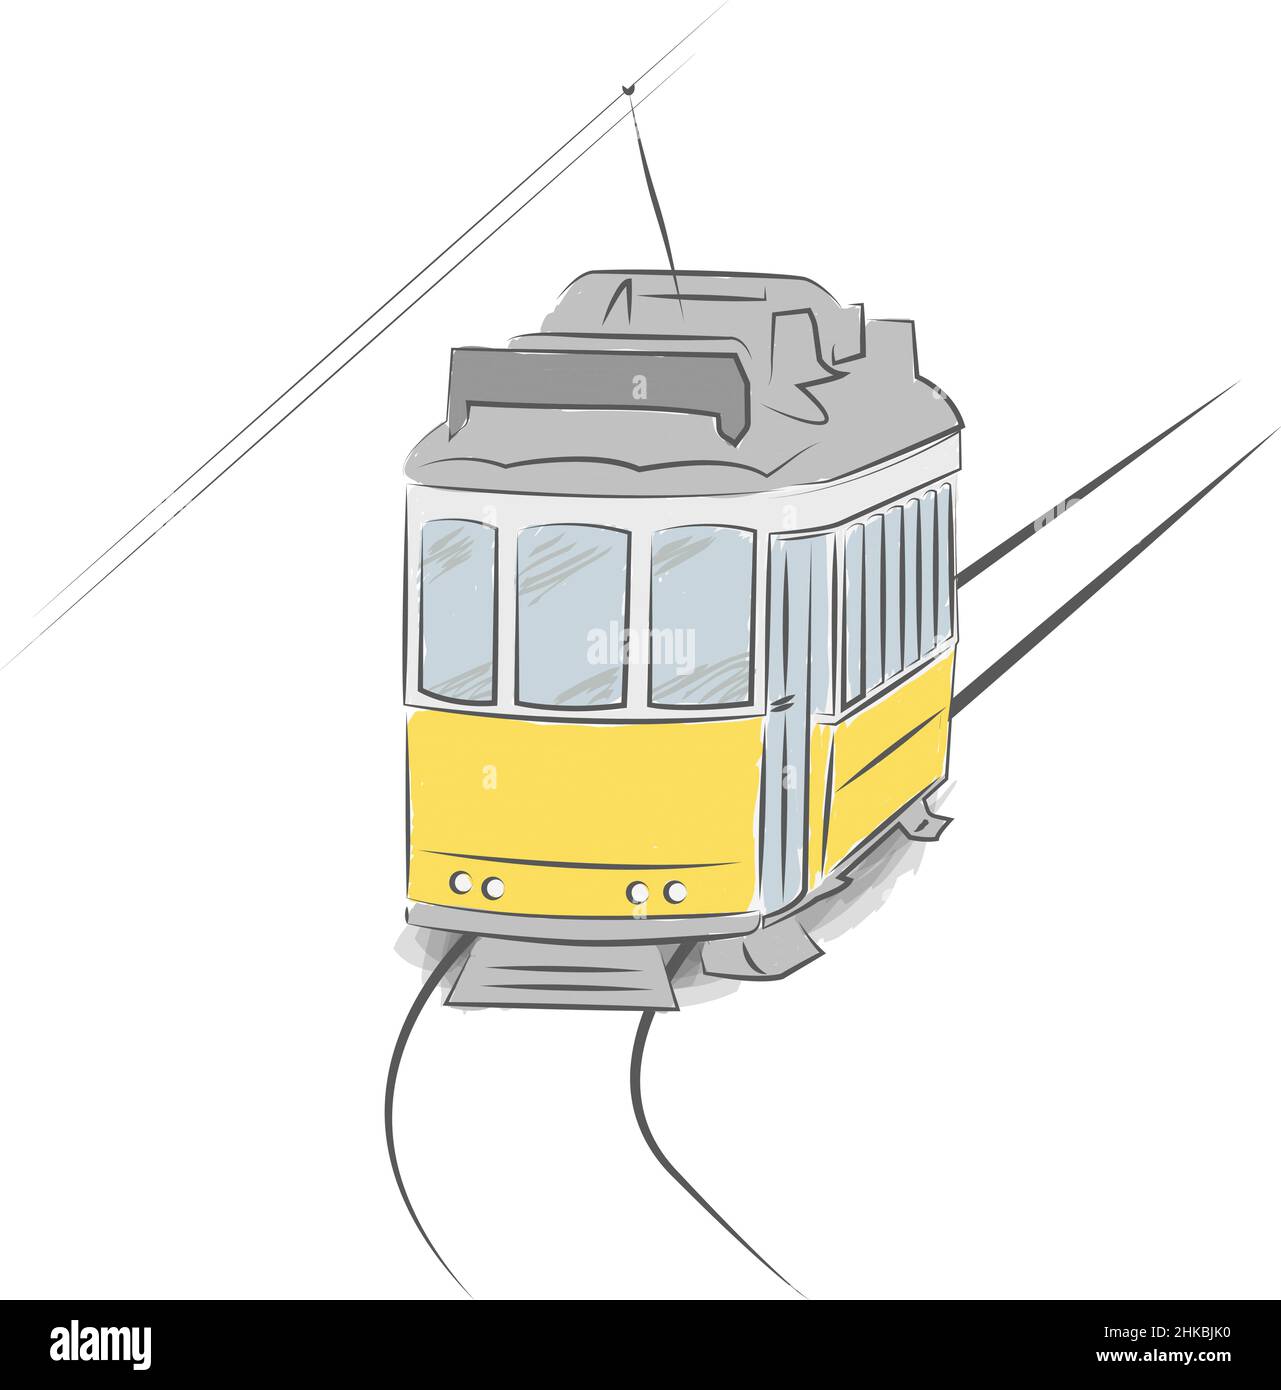 tranvía típico de lisboa dibujado a mano aislado sobre fondo blanco, ilustración vectorial Ilustración del Vector